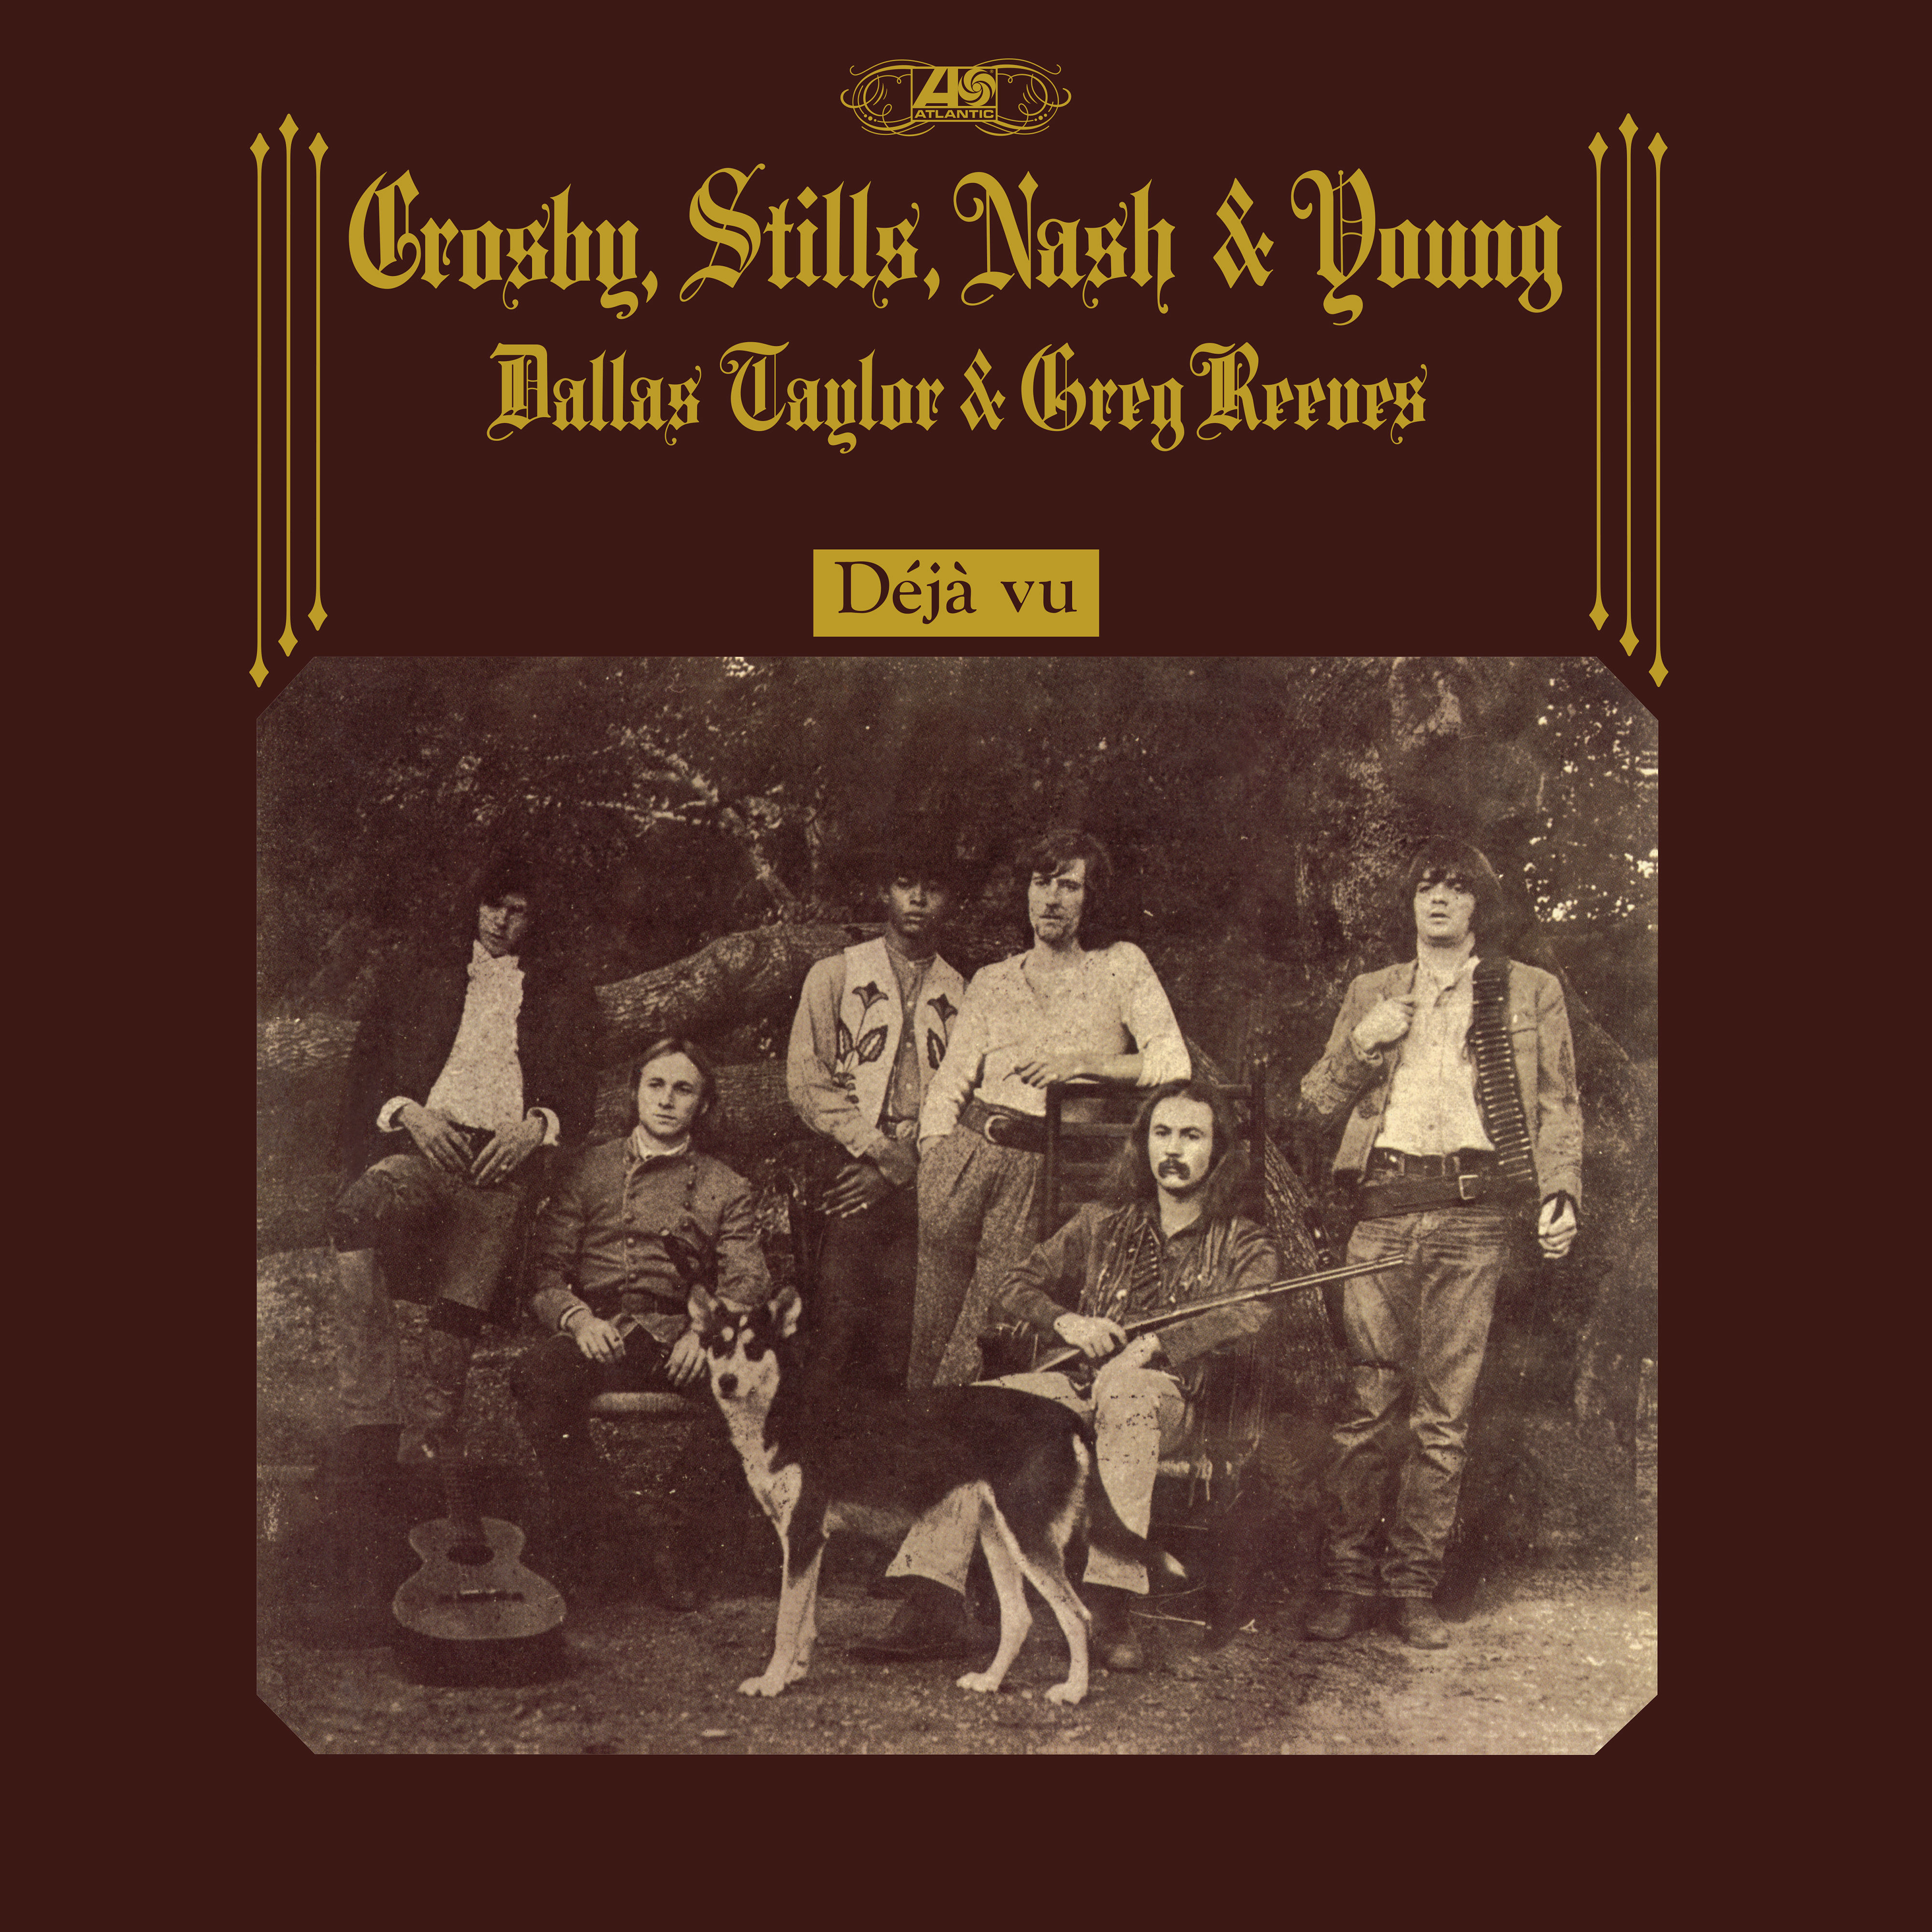 Crosby, Stills, Nash & Young - Déjà Vu (50th Anniversary Deluxe Edition) (1970/2021) [FLAC 24bit/192kHz]